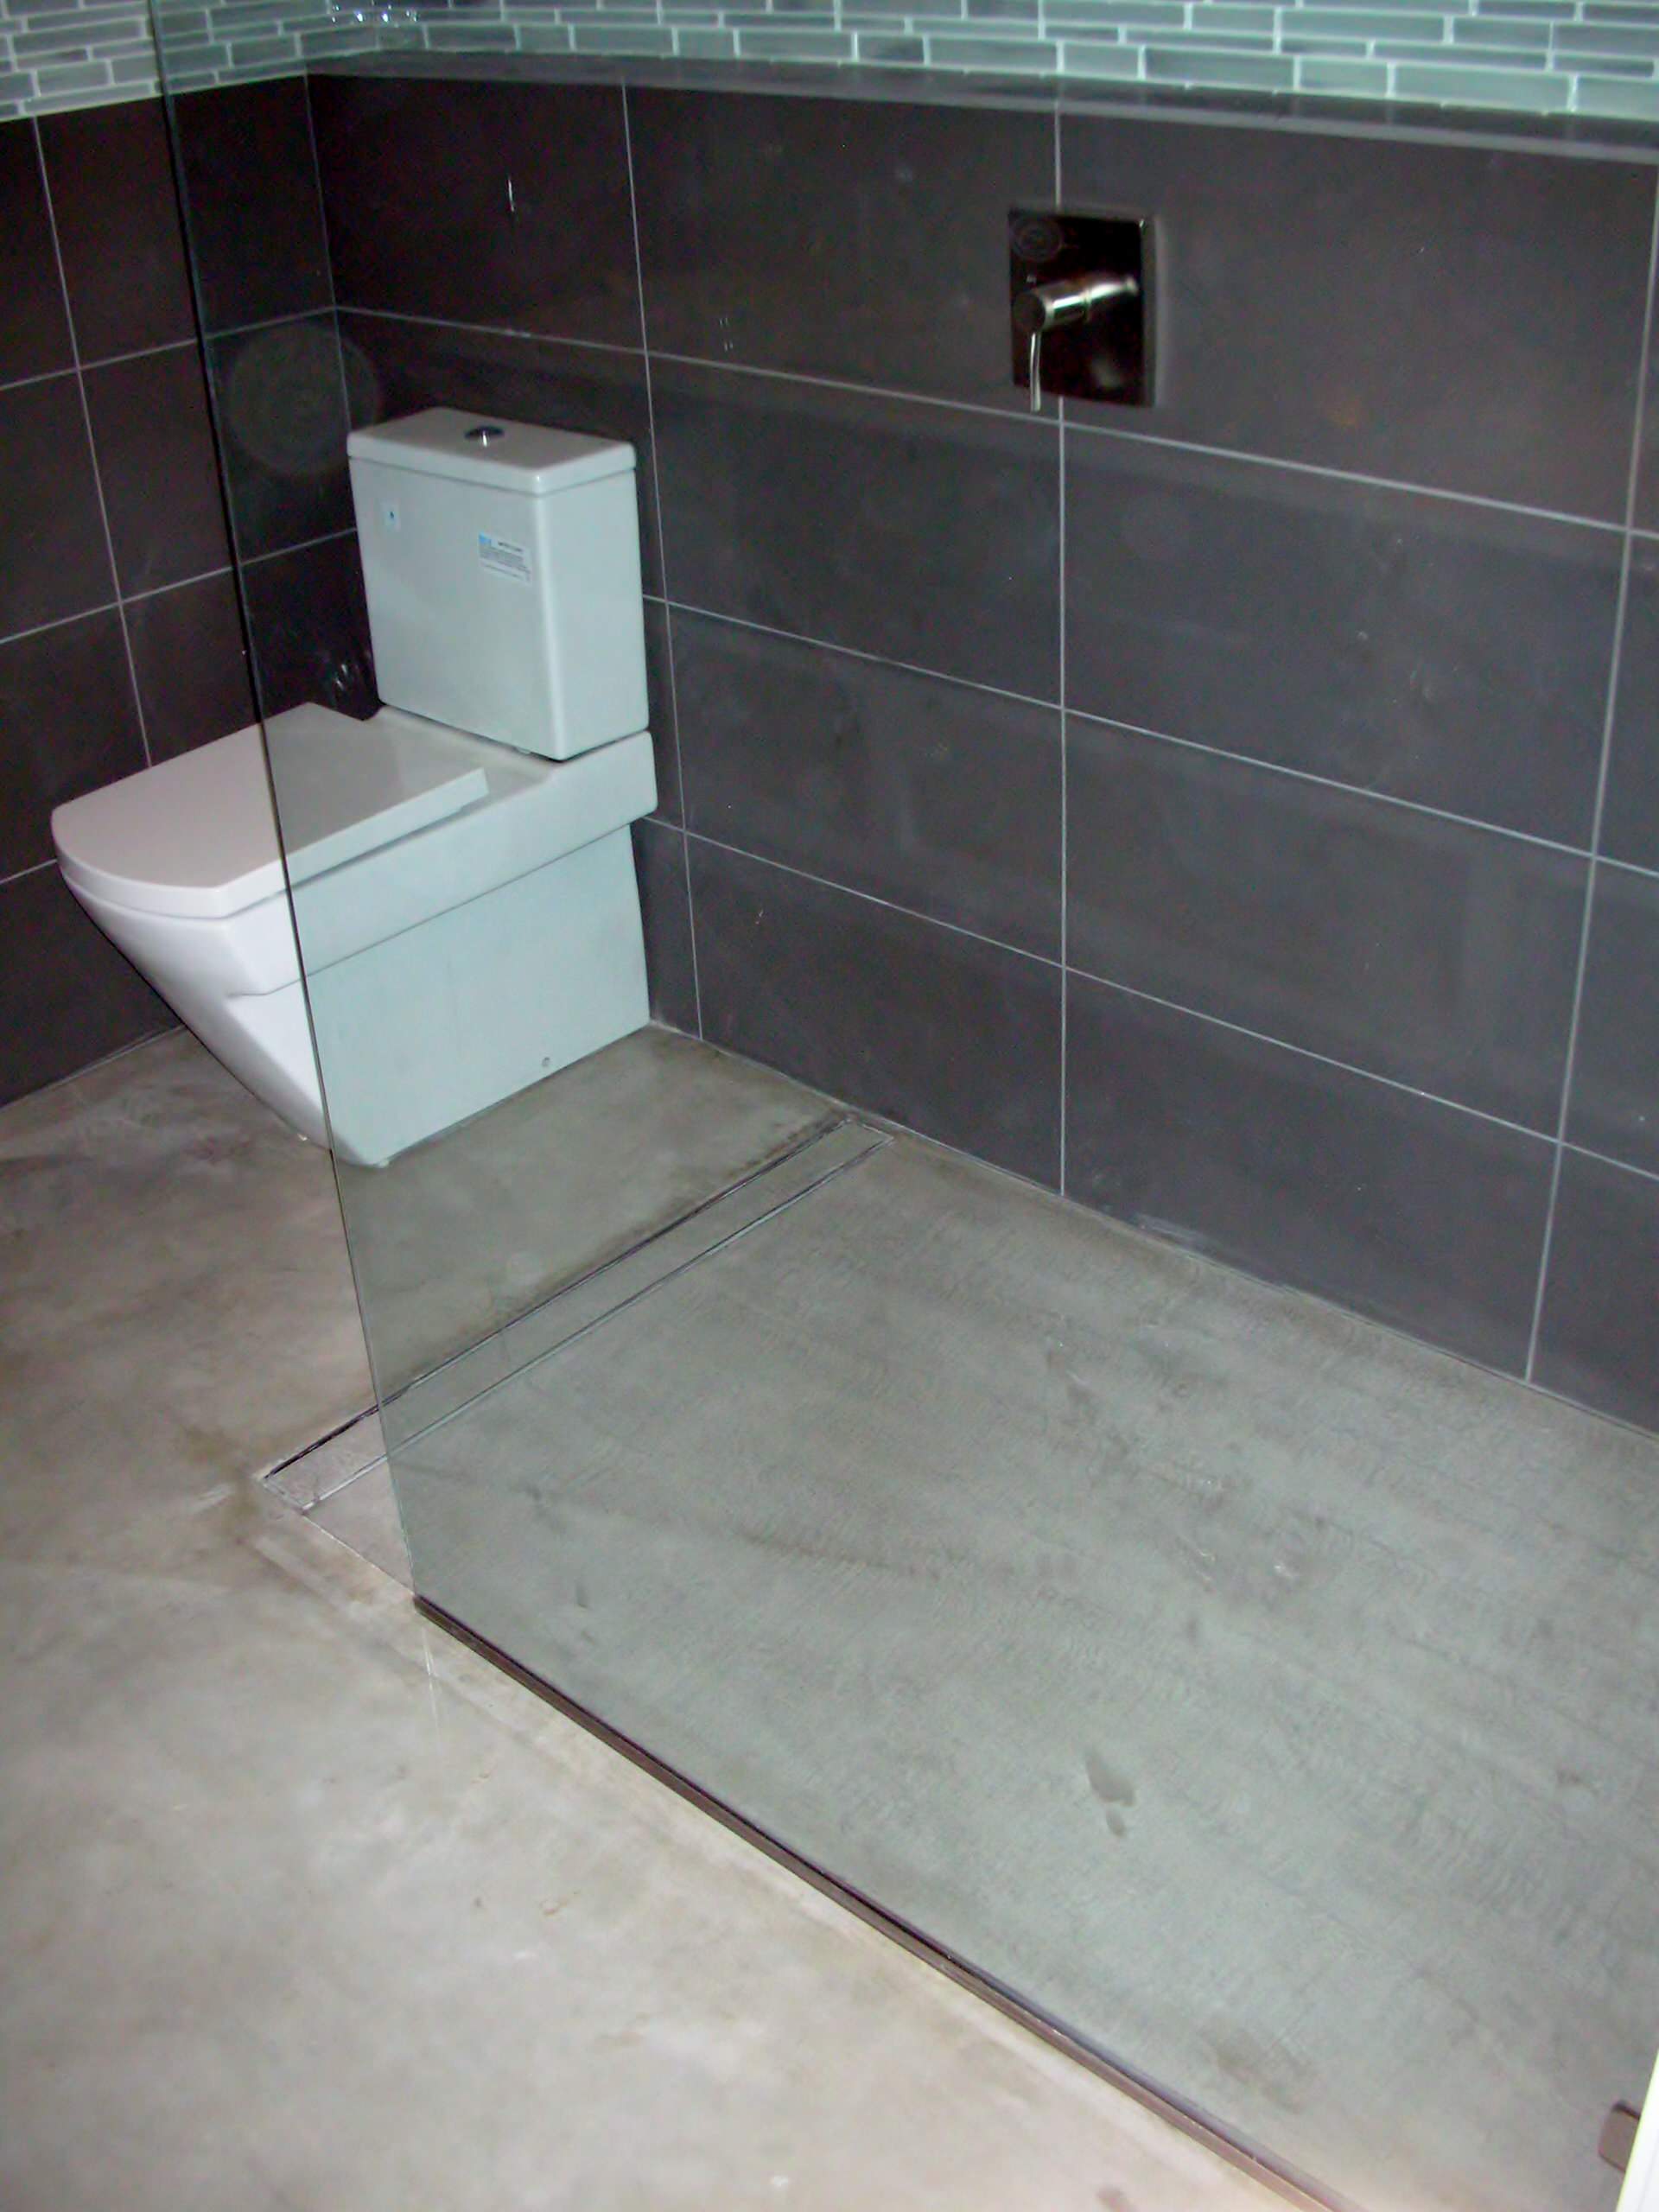 Concrete Floor And Curbless Shower, Concrete Shower Floor No Tile